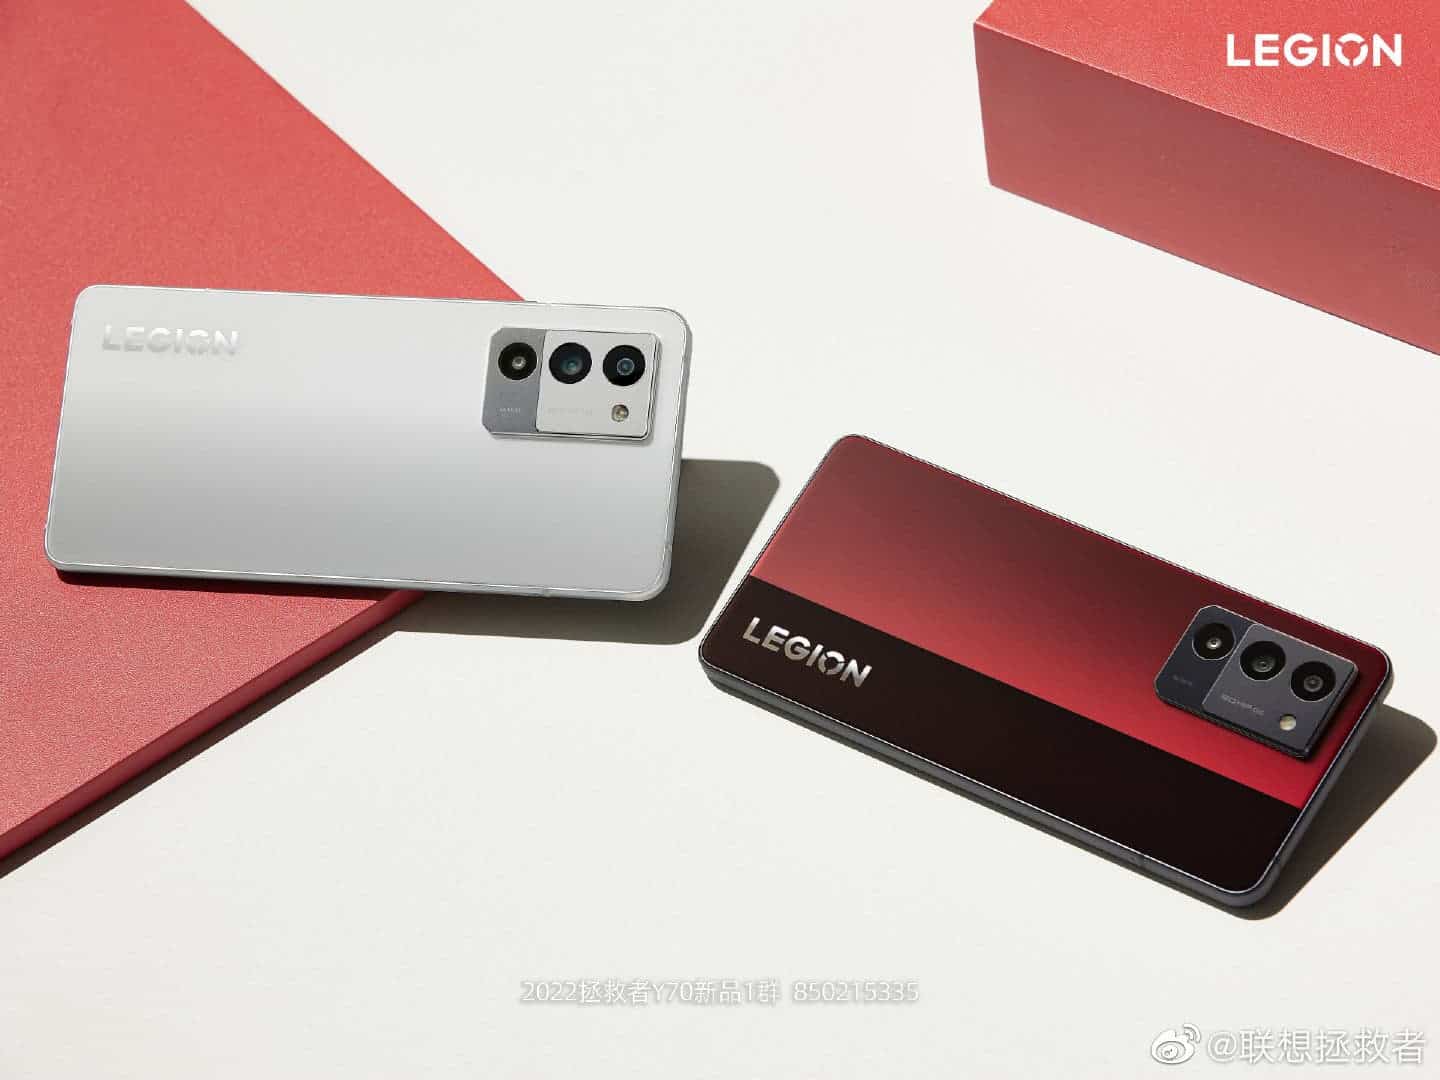 لينوفو يطلق هاتف جديد بأرخص سعر ومعالج مميز Lenovo-Legion-Y70-Flame-Red-and-Ice-Soul-White